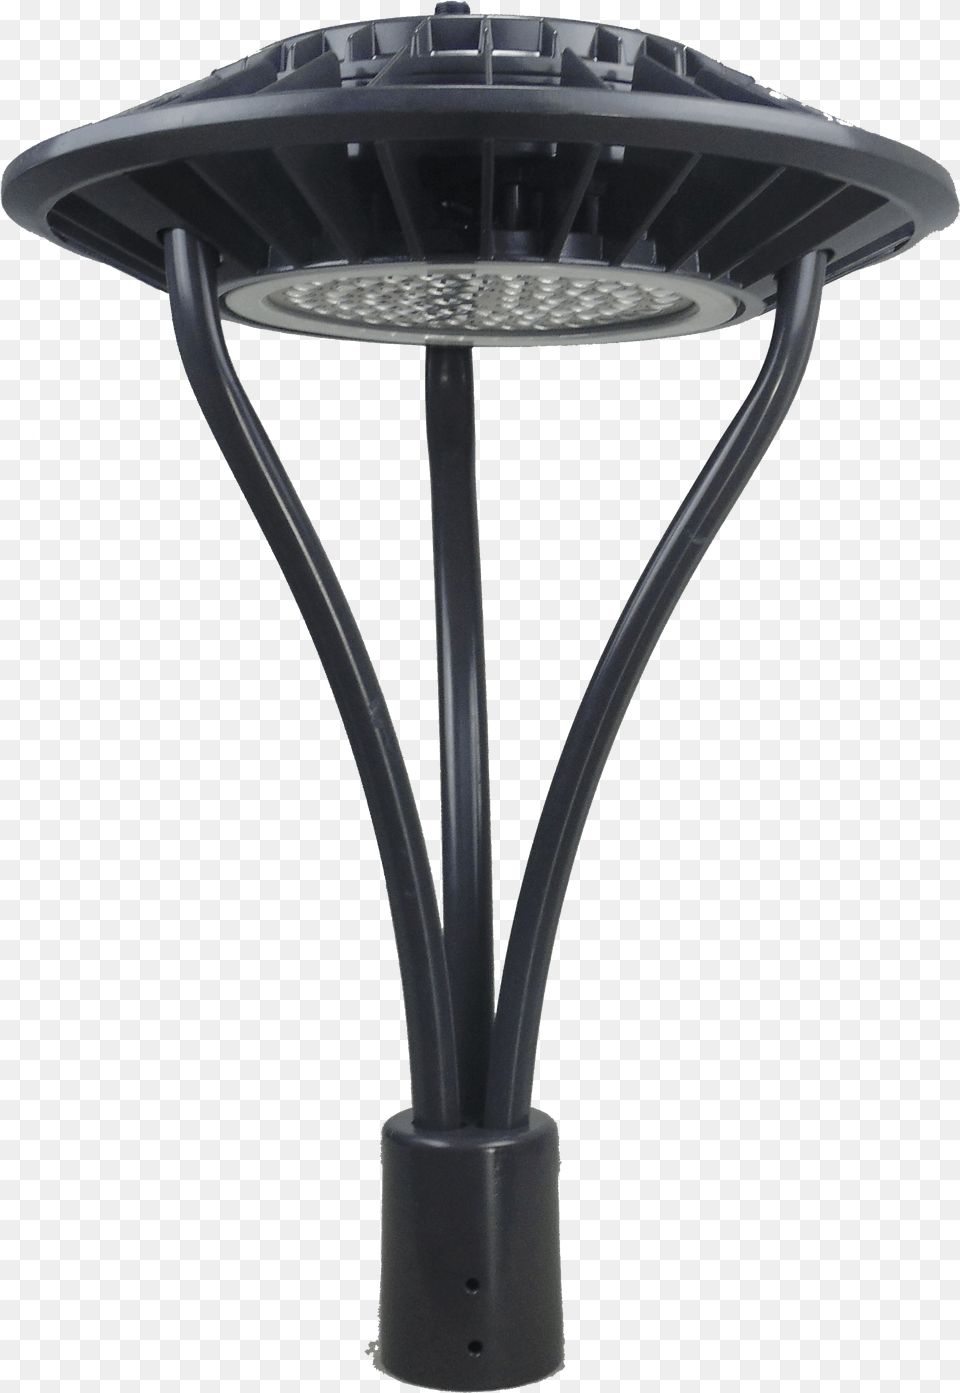 Lamp Posts Outdoor Light Poles For Parking Lot U0026 Sidewalk Led Post Top Light, Lighting, Indoors Free Png Download